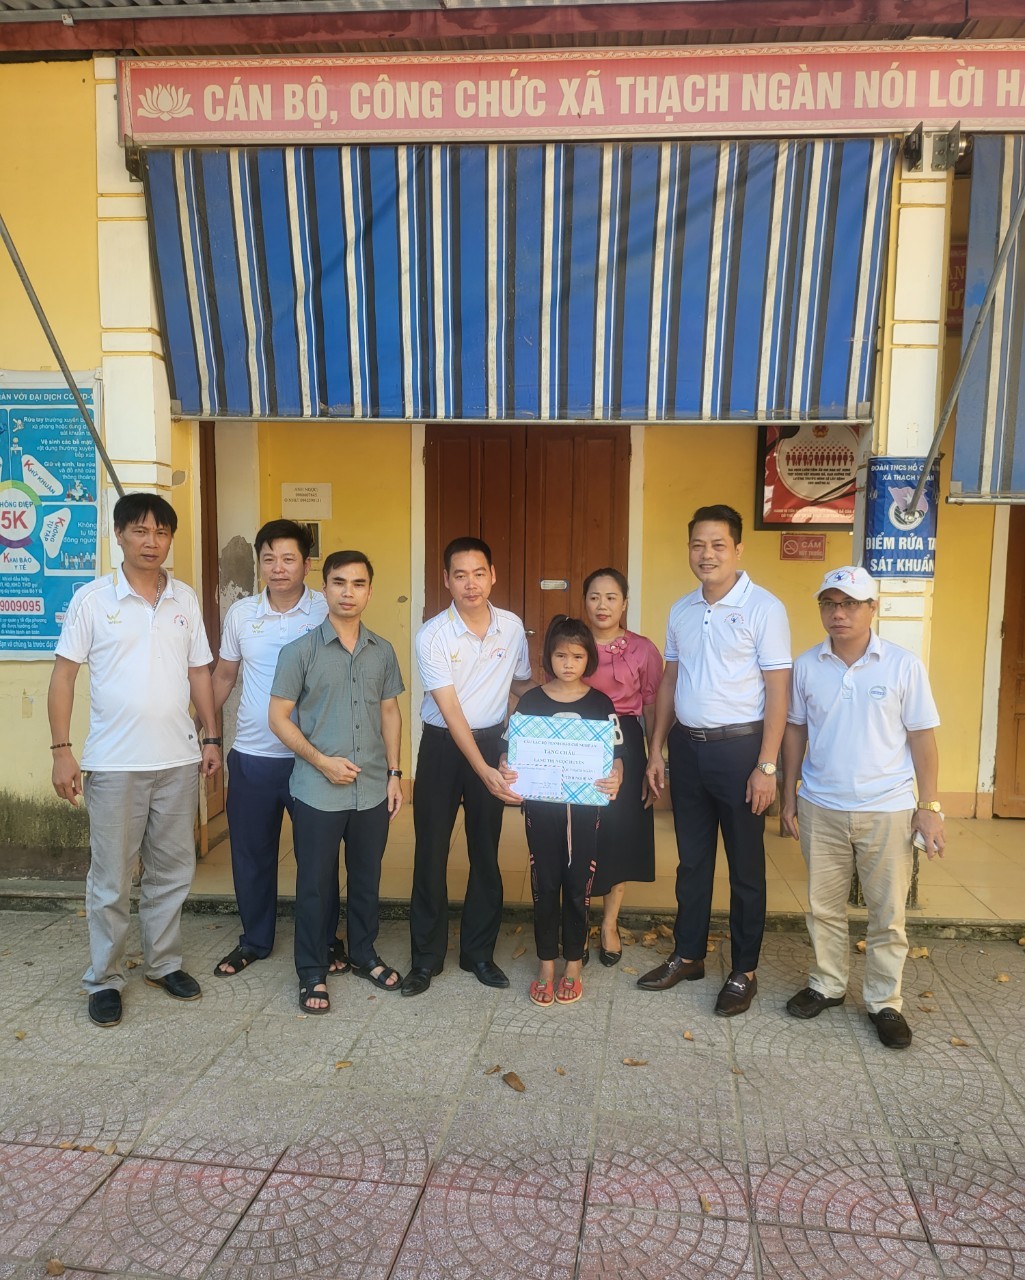 Trên đường vào địa điểm trao quà, CLB đã dừng chân trao quà cho em Lang Thị Ngọc Huyền - học sinh lớp 5A trường TH Thạch Ngàn 1, có hoàn cảnh đặc biệt khó khăn với quà và 2 triệu đồng.